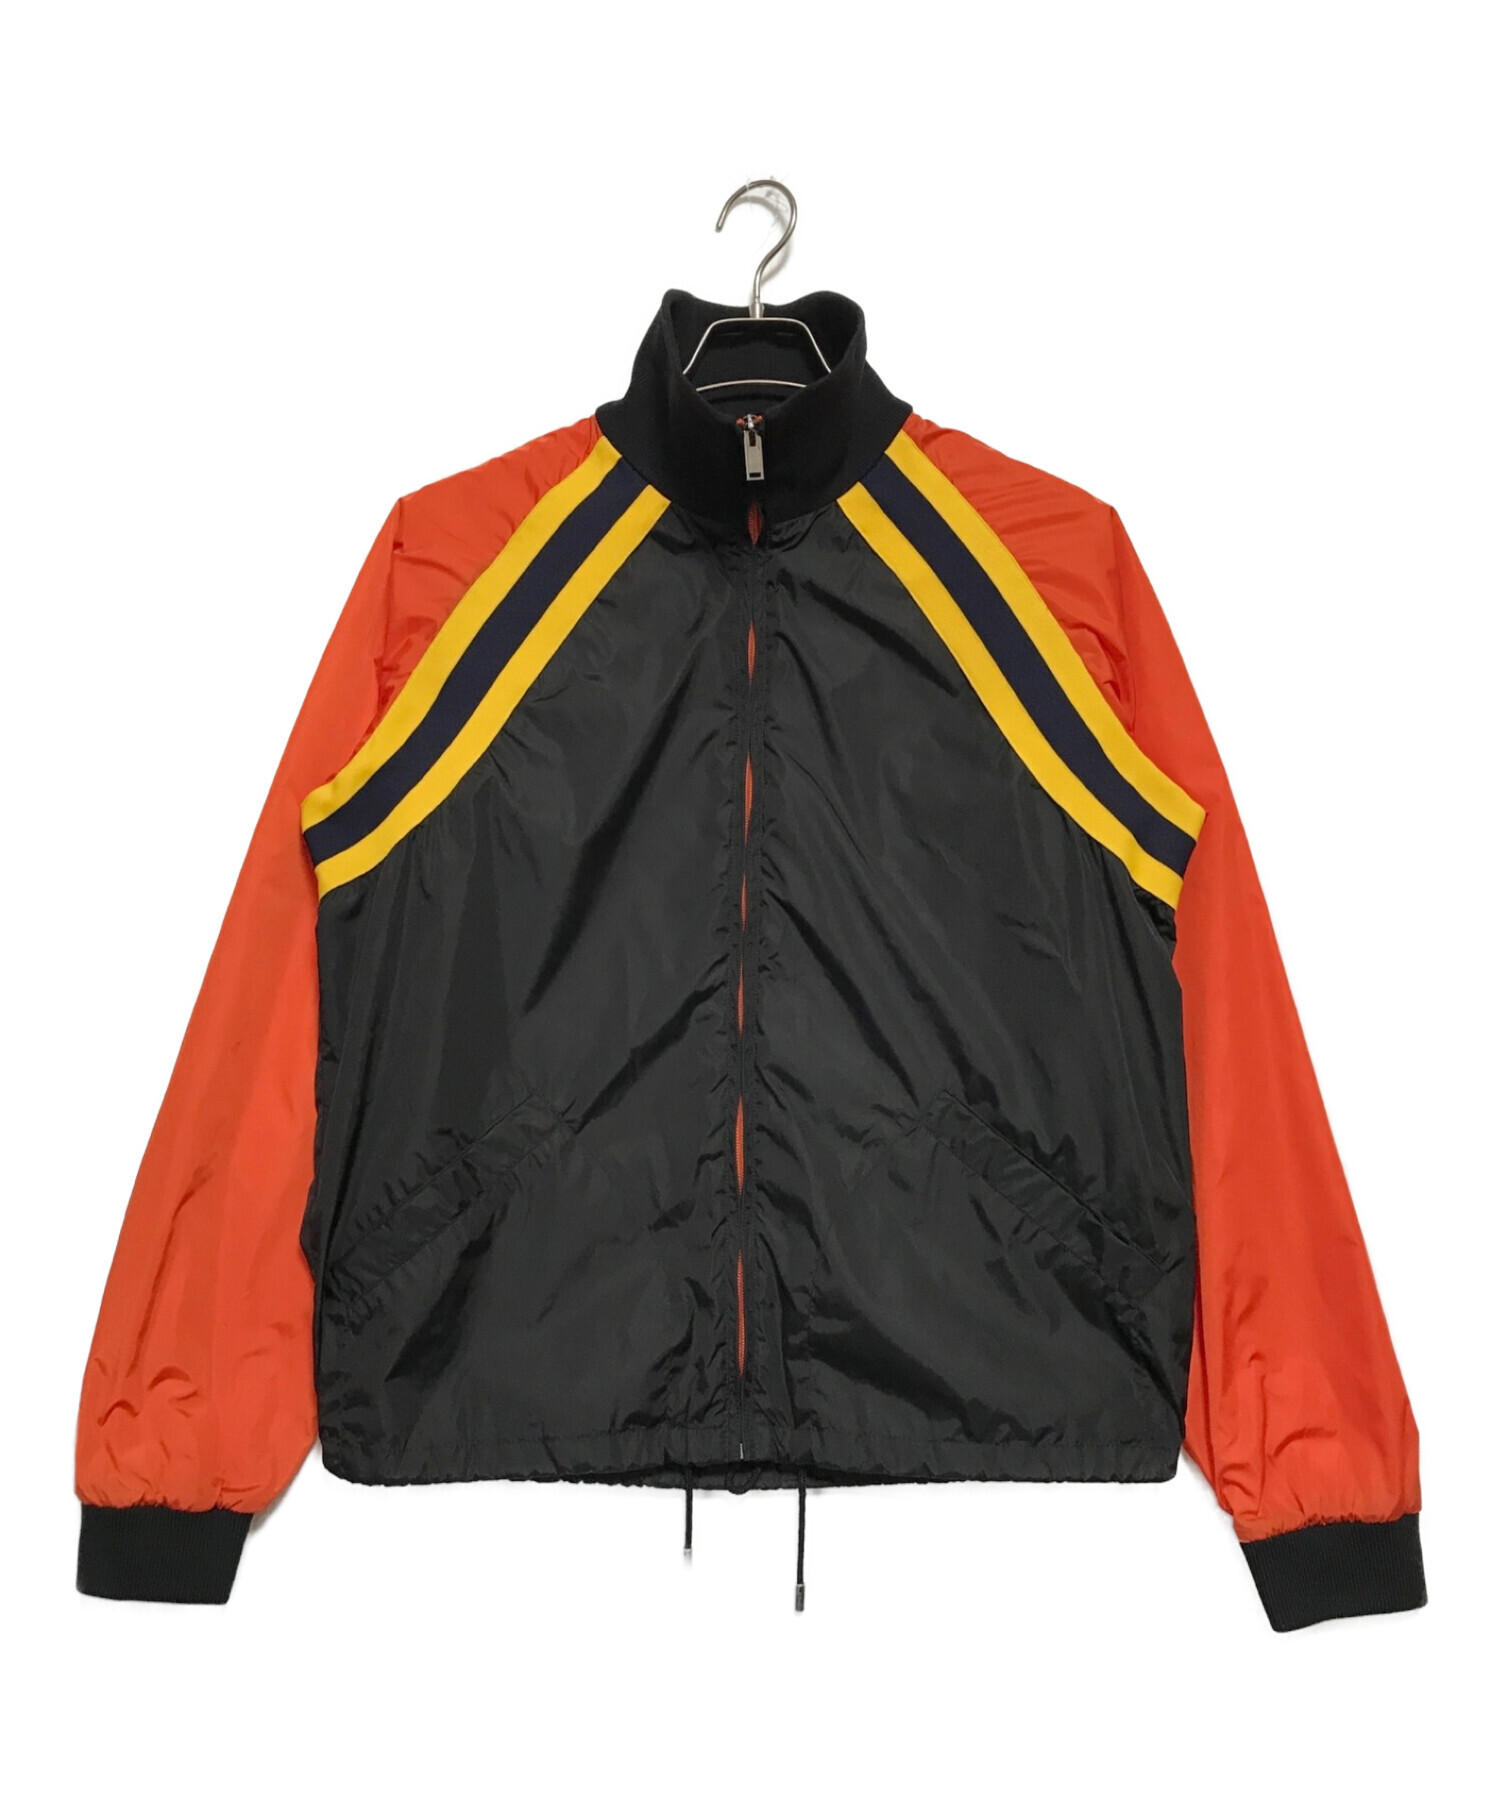 GUCCI (グッチ) ビンテージロゴナイロントラックジャケット オレンジ×ブラック サイズ:SIZE 46